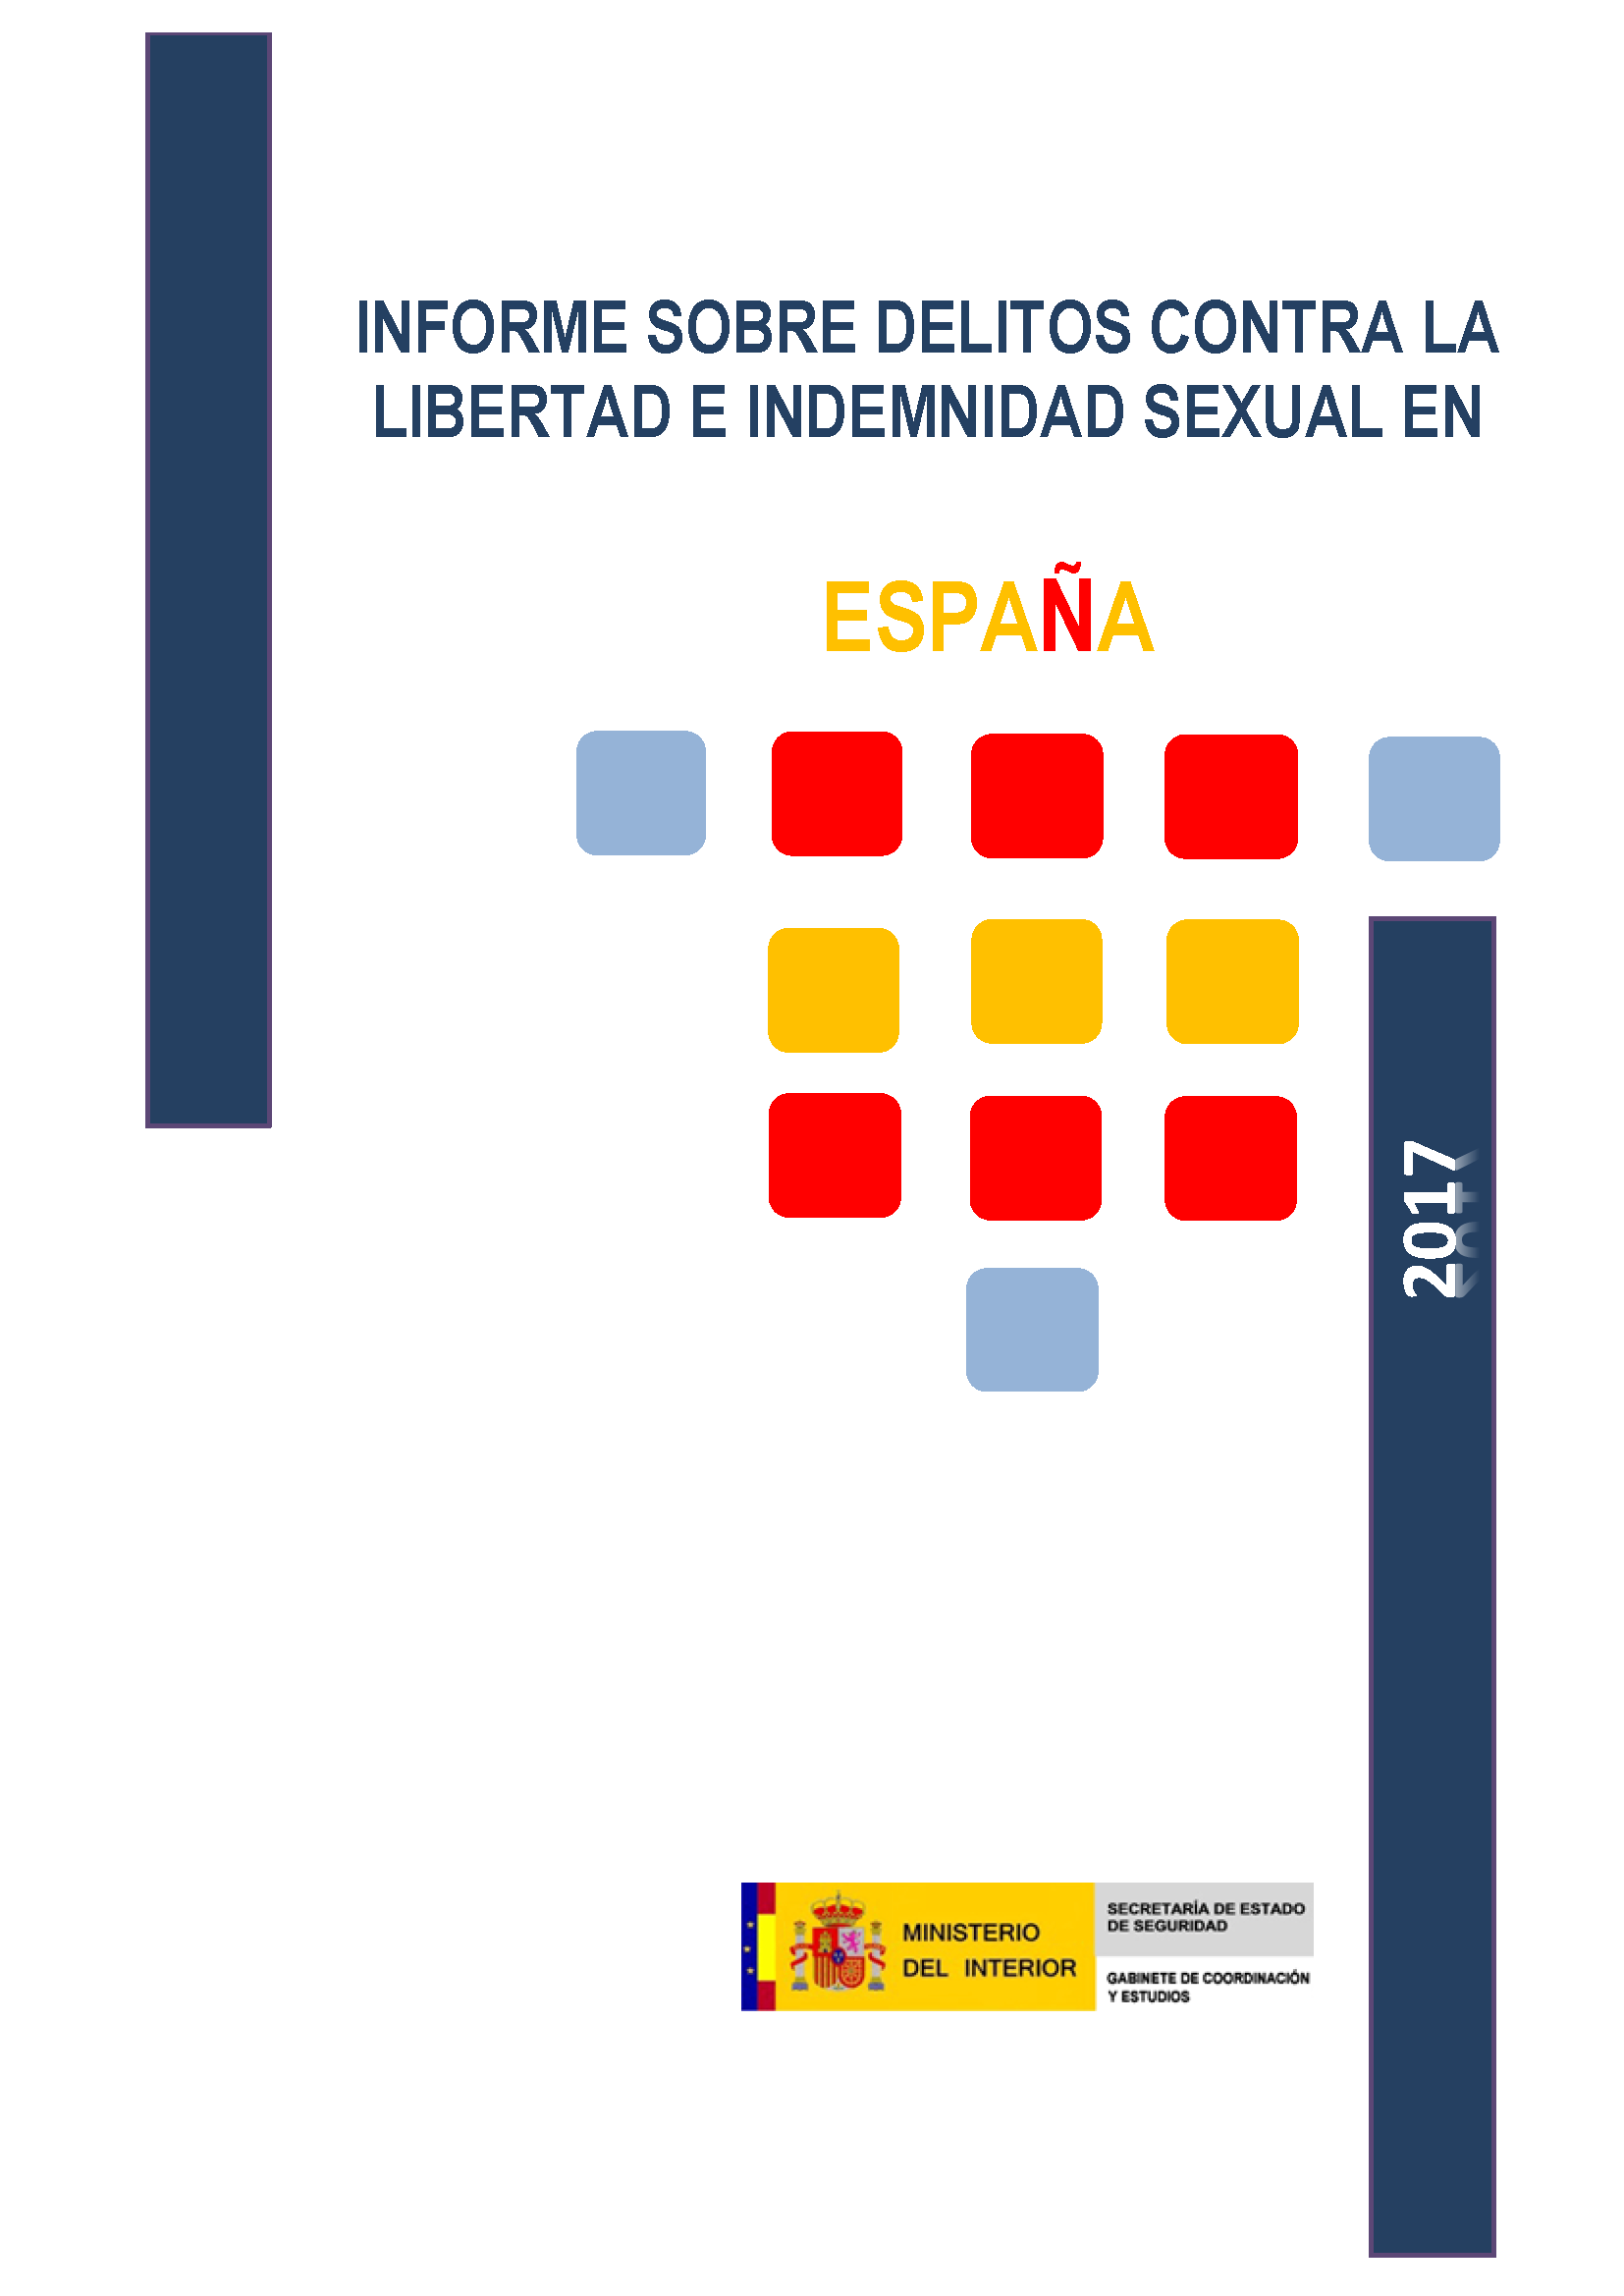 Informe delitos contra la libertad e indemnidad sexual 2017